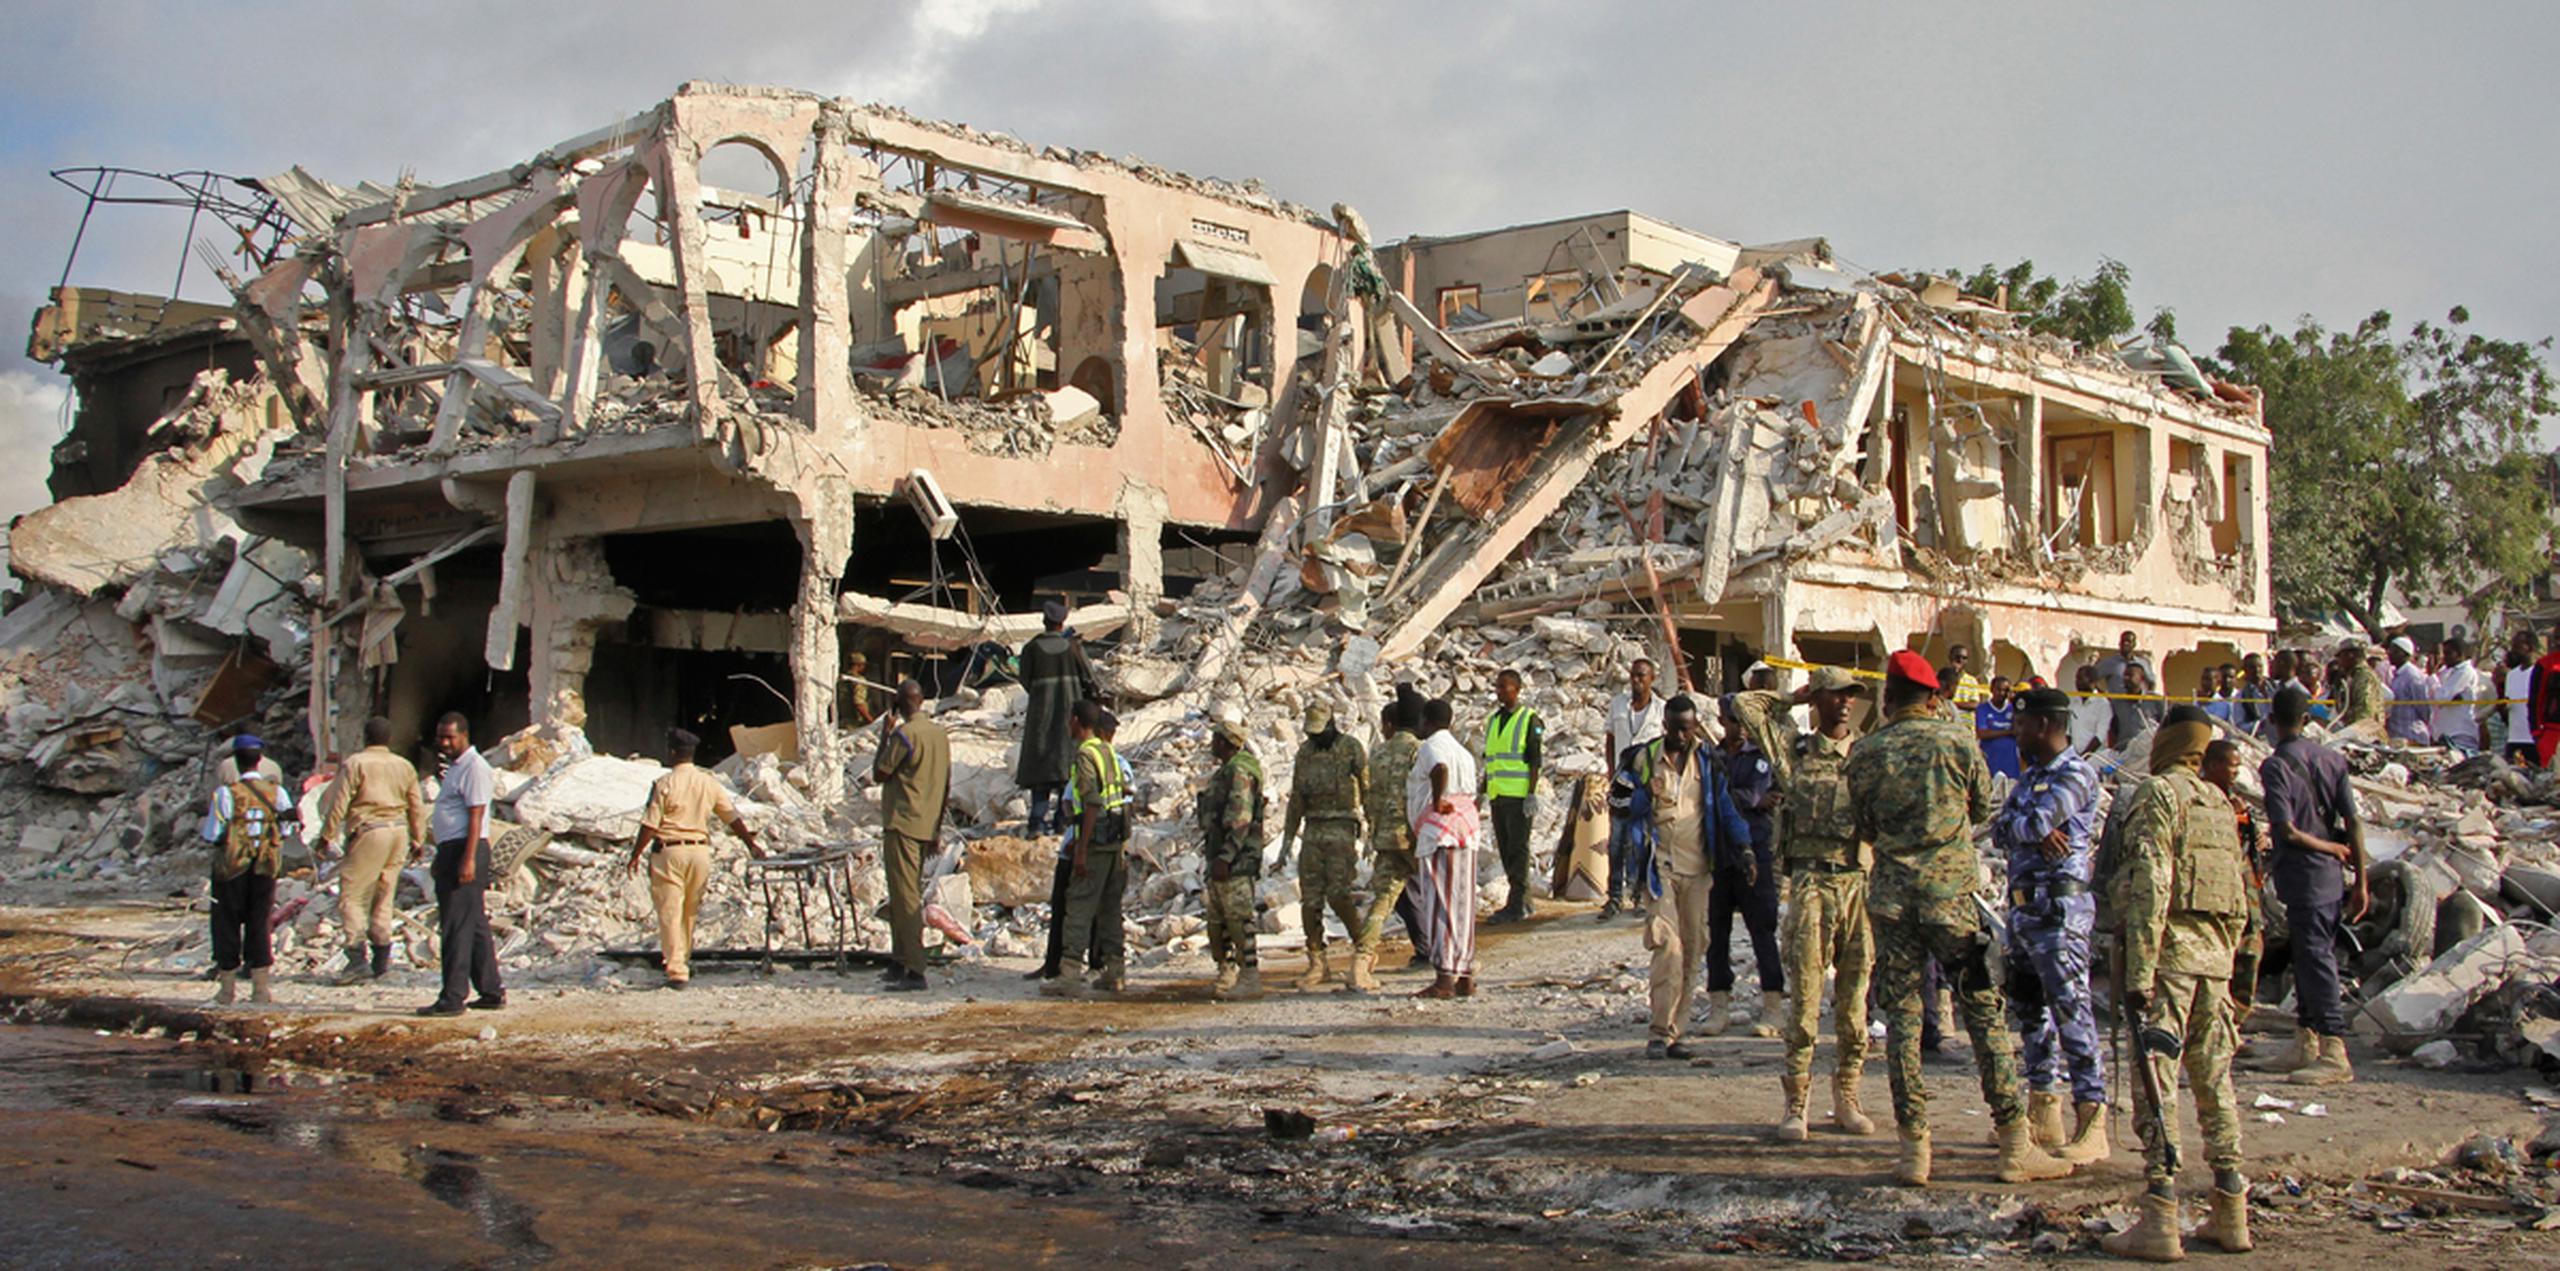 Fuerzas de seguridad somalíes y otras personas buscan cadáveres cerca del lugar donde ocurrió un atentado el sábado, en Mogadiscio, Somalia. (AP)